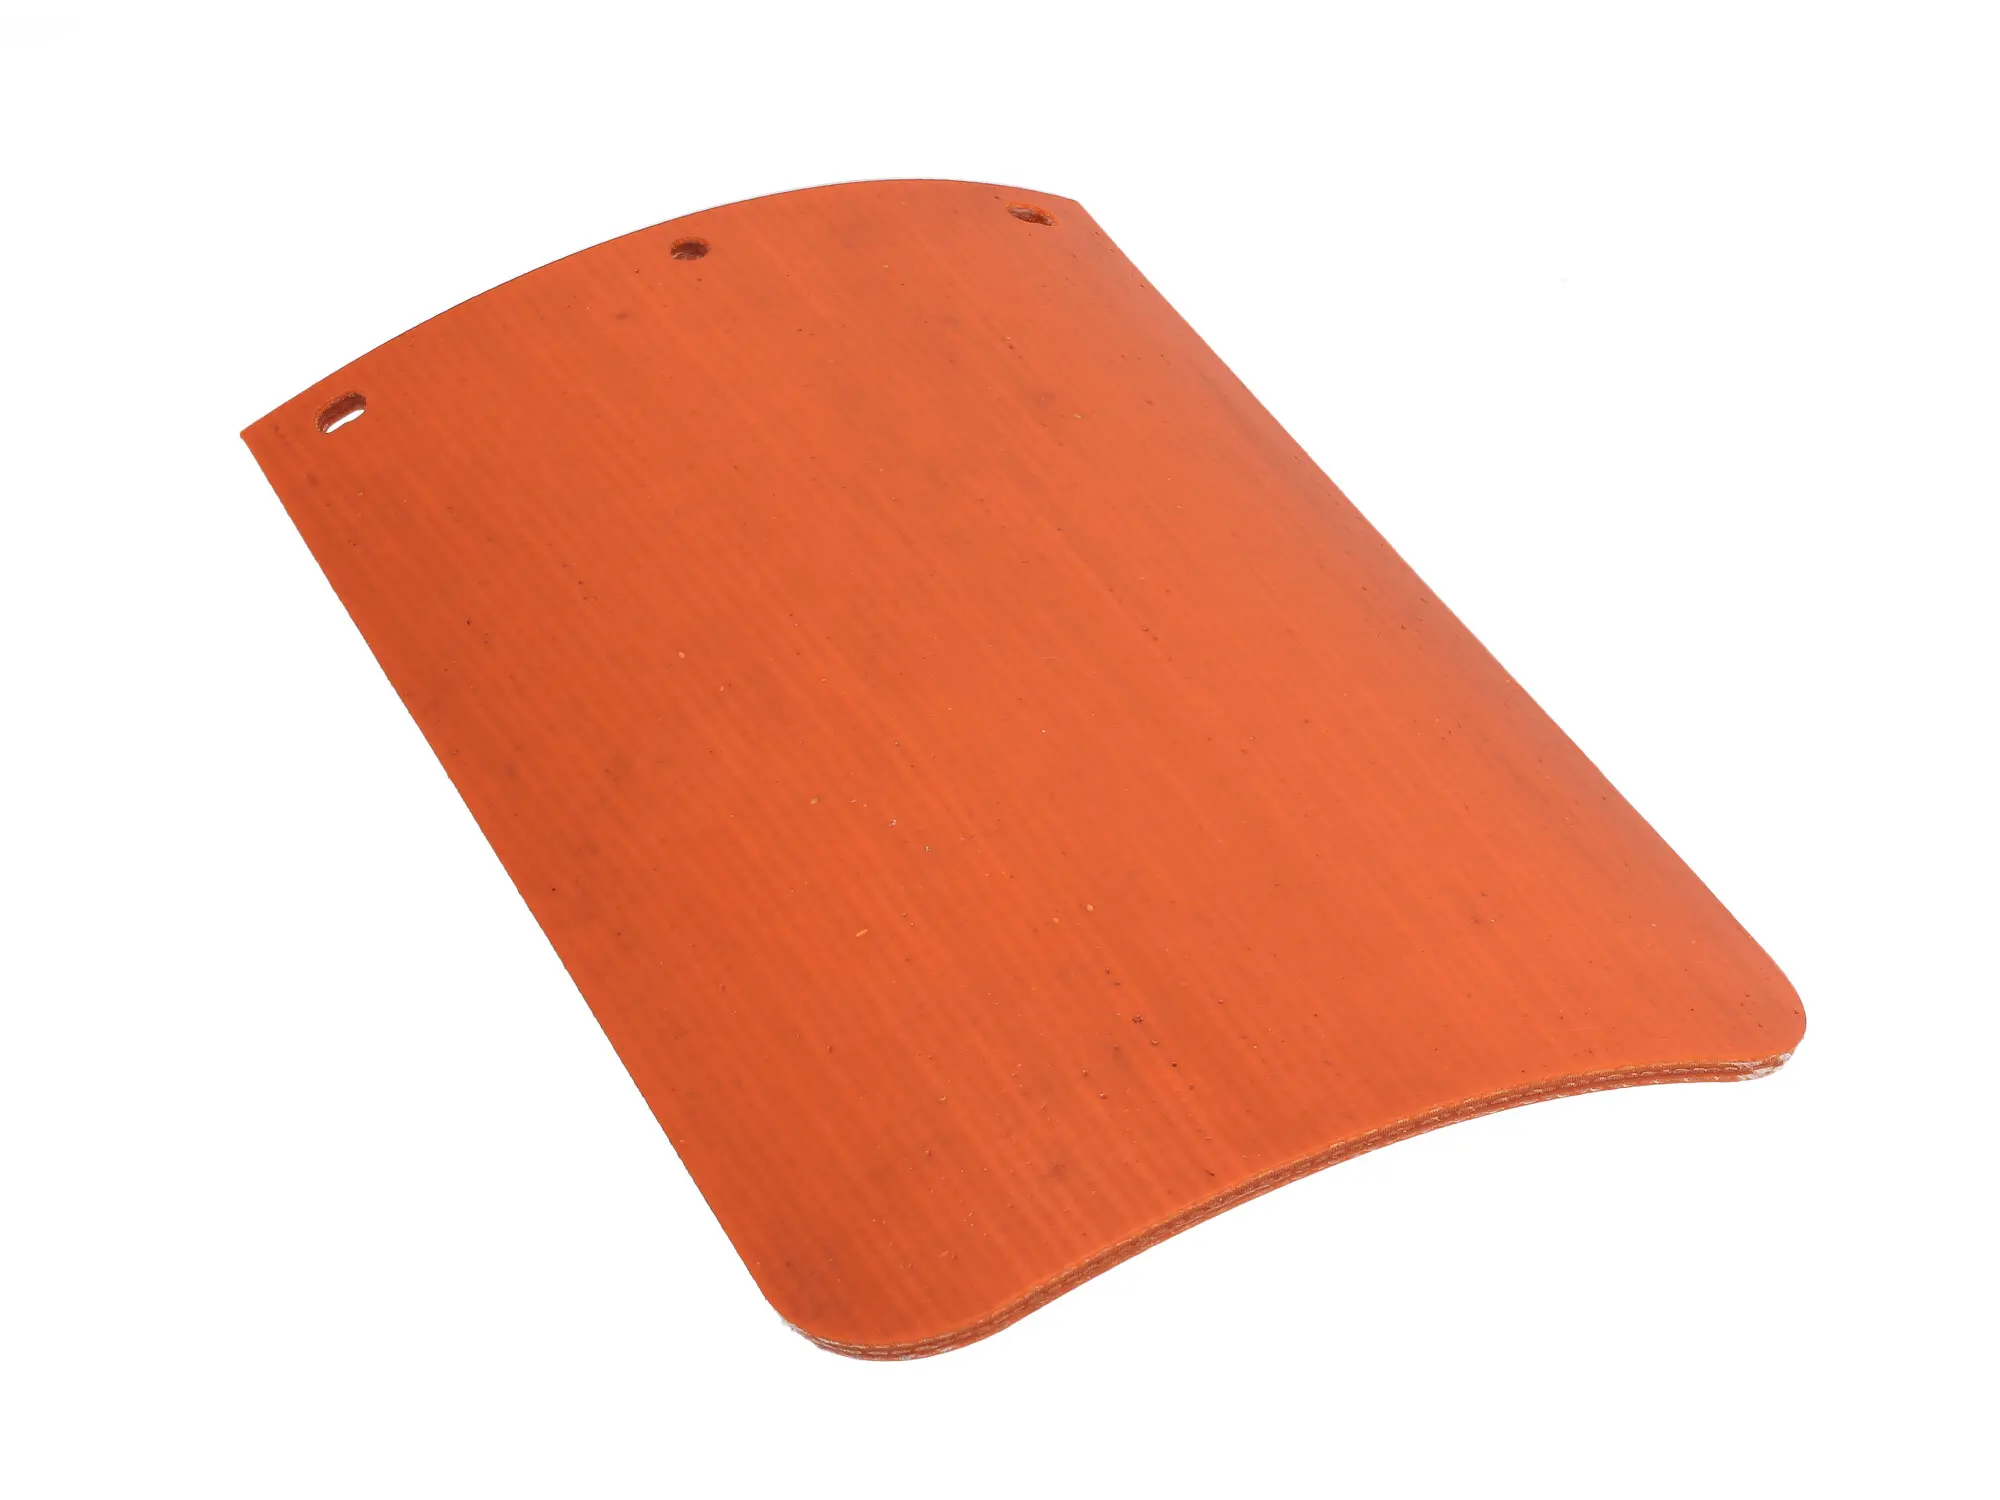 Schmutzschutz orange, Gummi - extra lange Ausführung - Mokick, Art.-Nr.: 10072846 - Bild 1